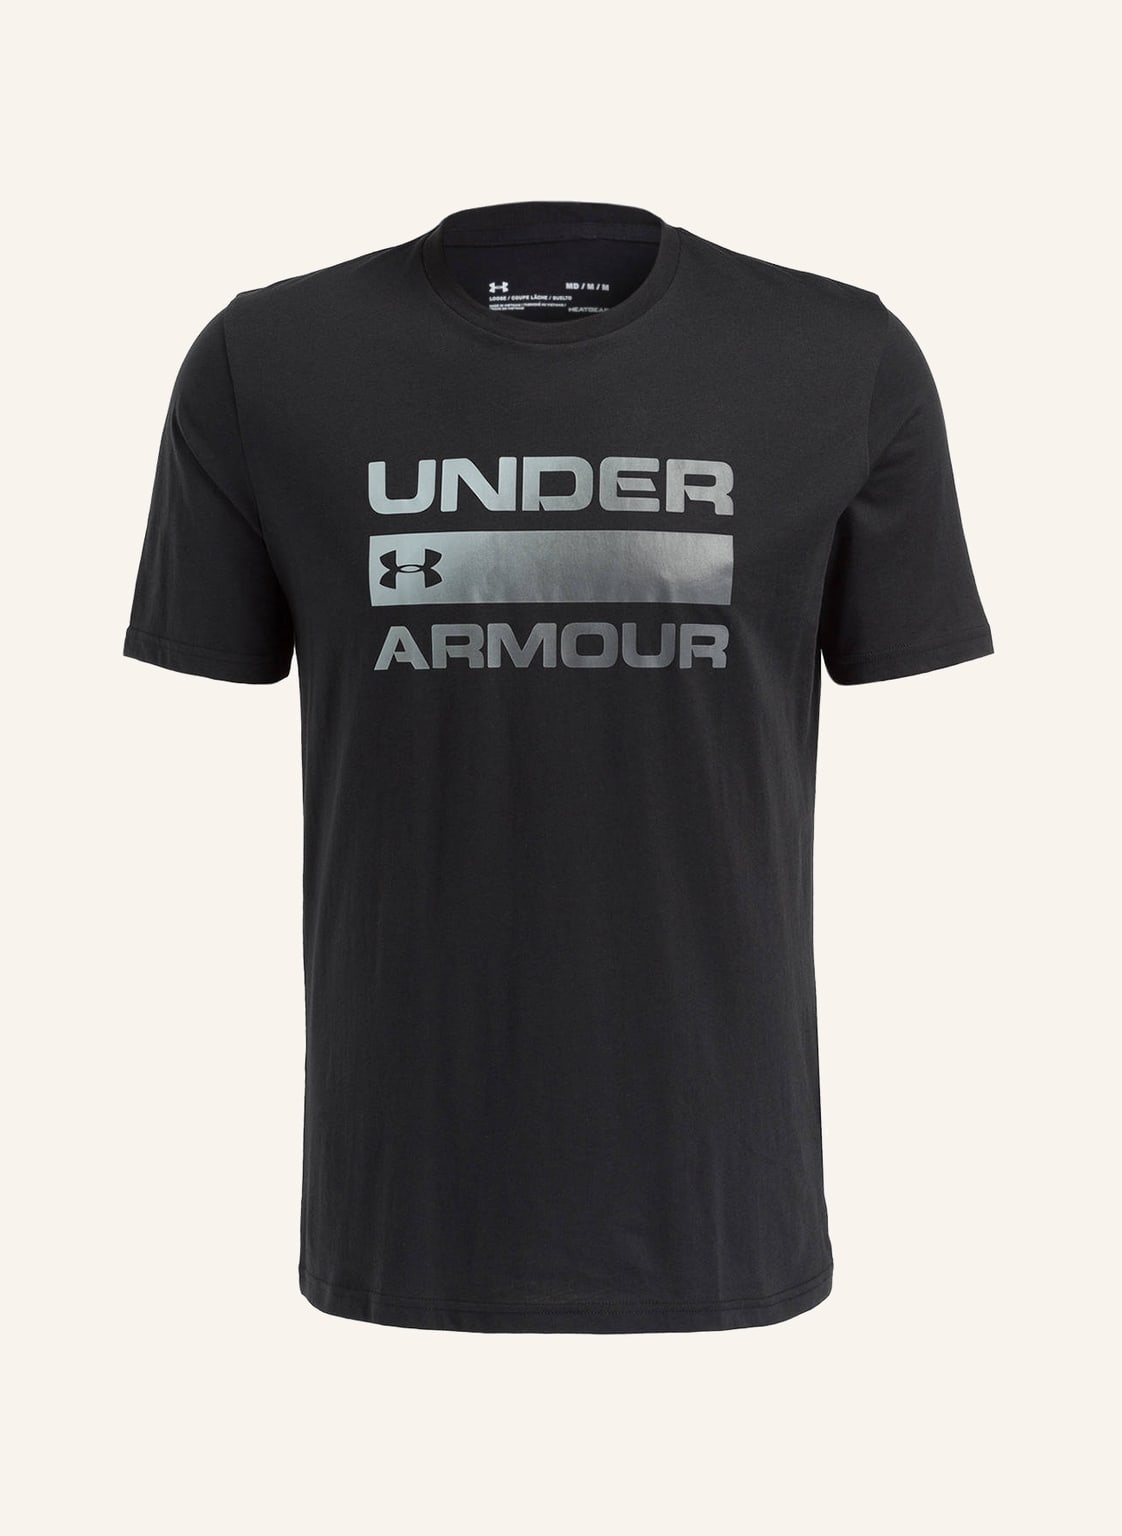 Under Armour T-Shirt Team Issue schwarz von Under Armour